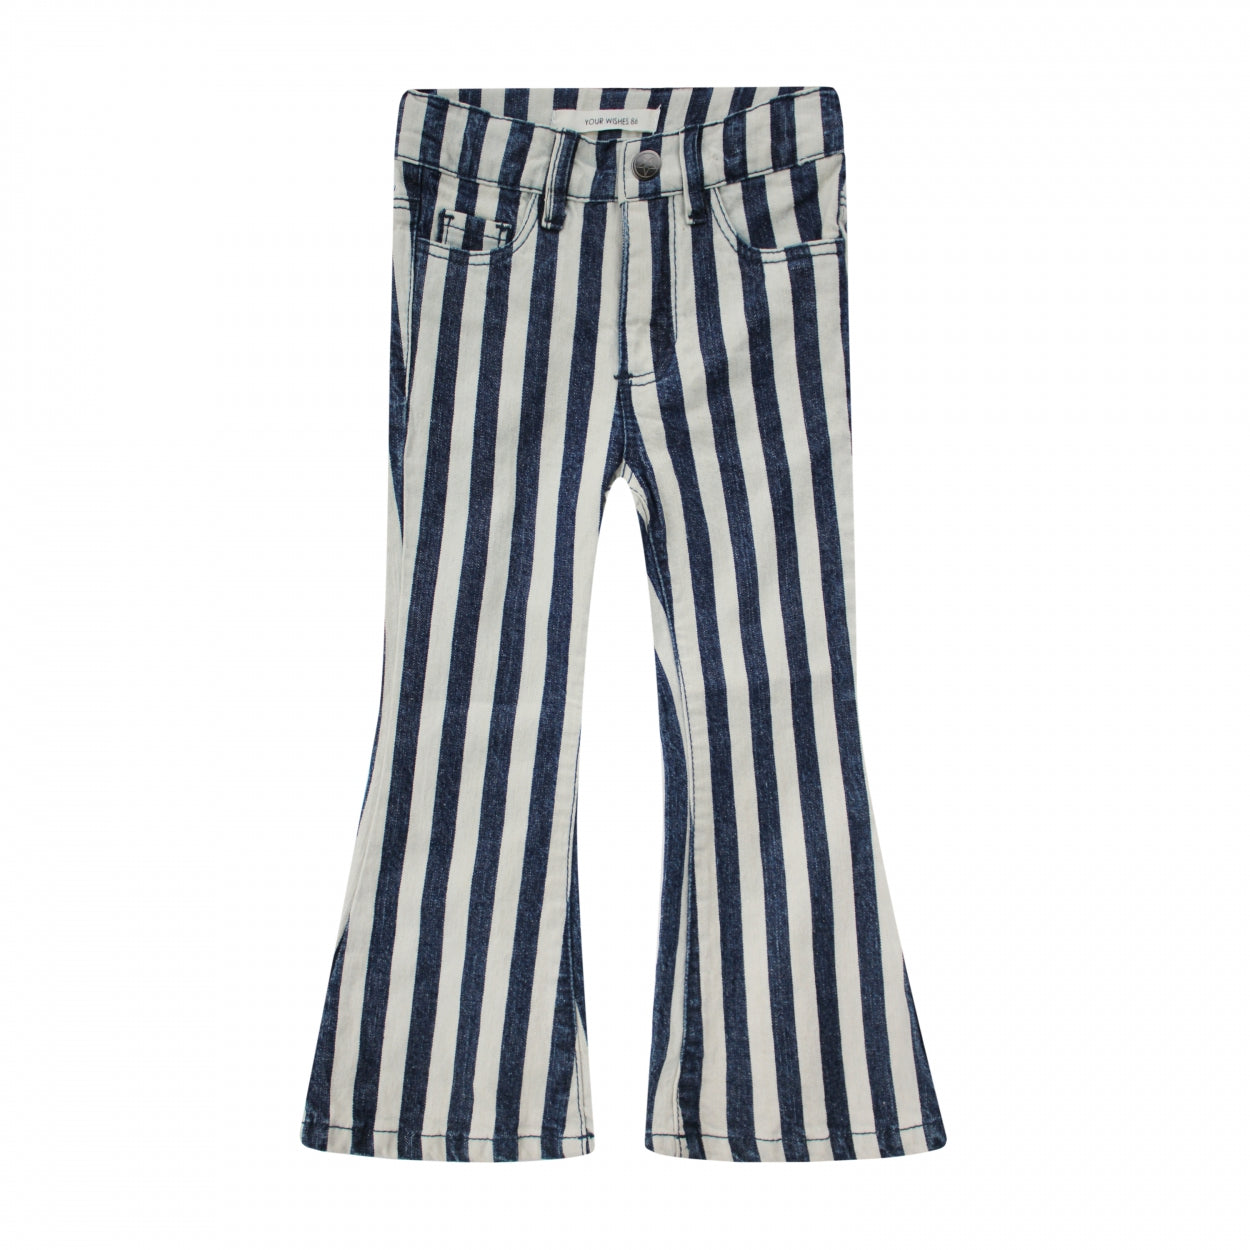 Meisjes Pants Striped Largas | Abba van Your Wishes in de kleur Classic Blue in maat 92.